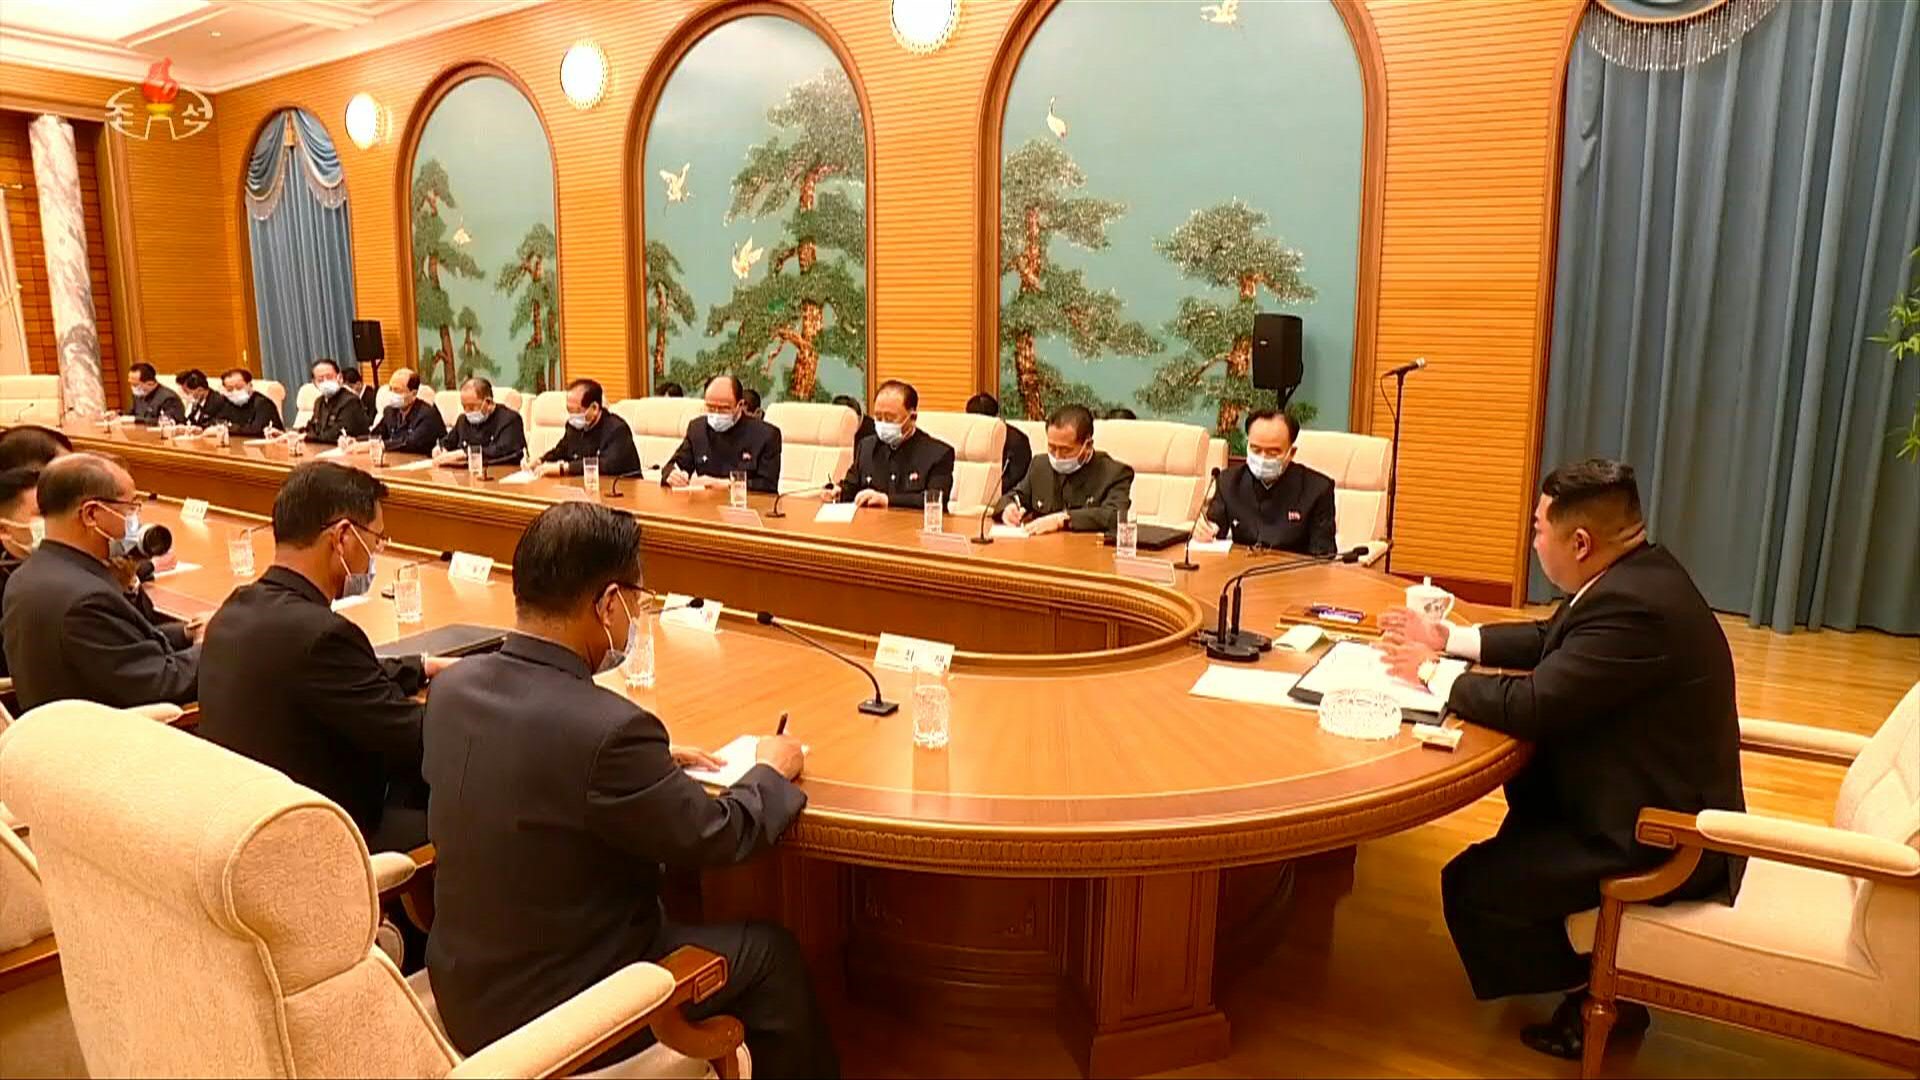 El politburó de Corea del Norte se reunió este viernes para abordar el brote de COVID en el país